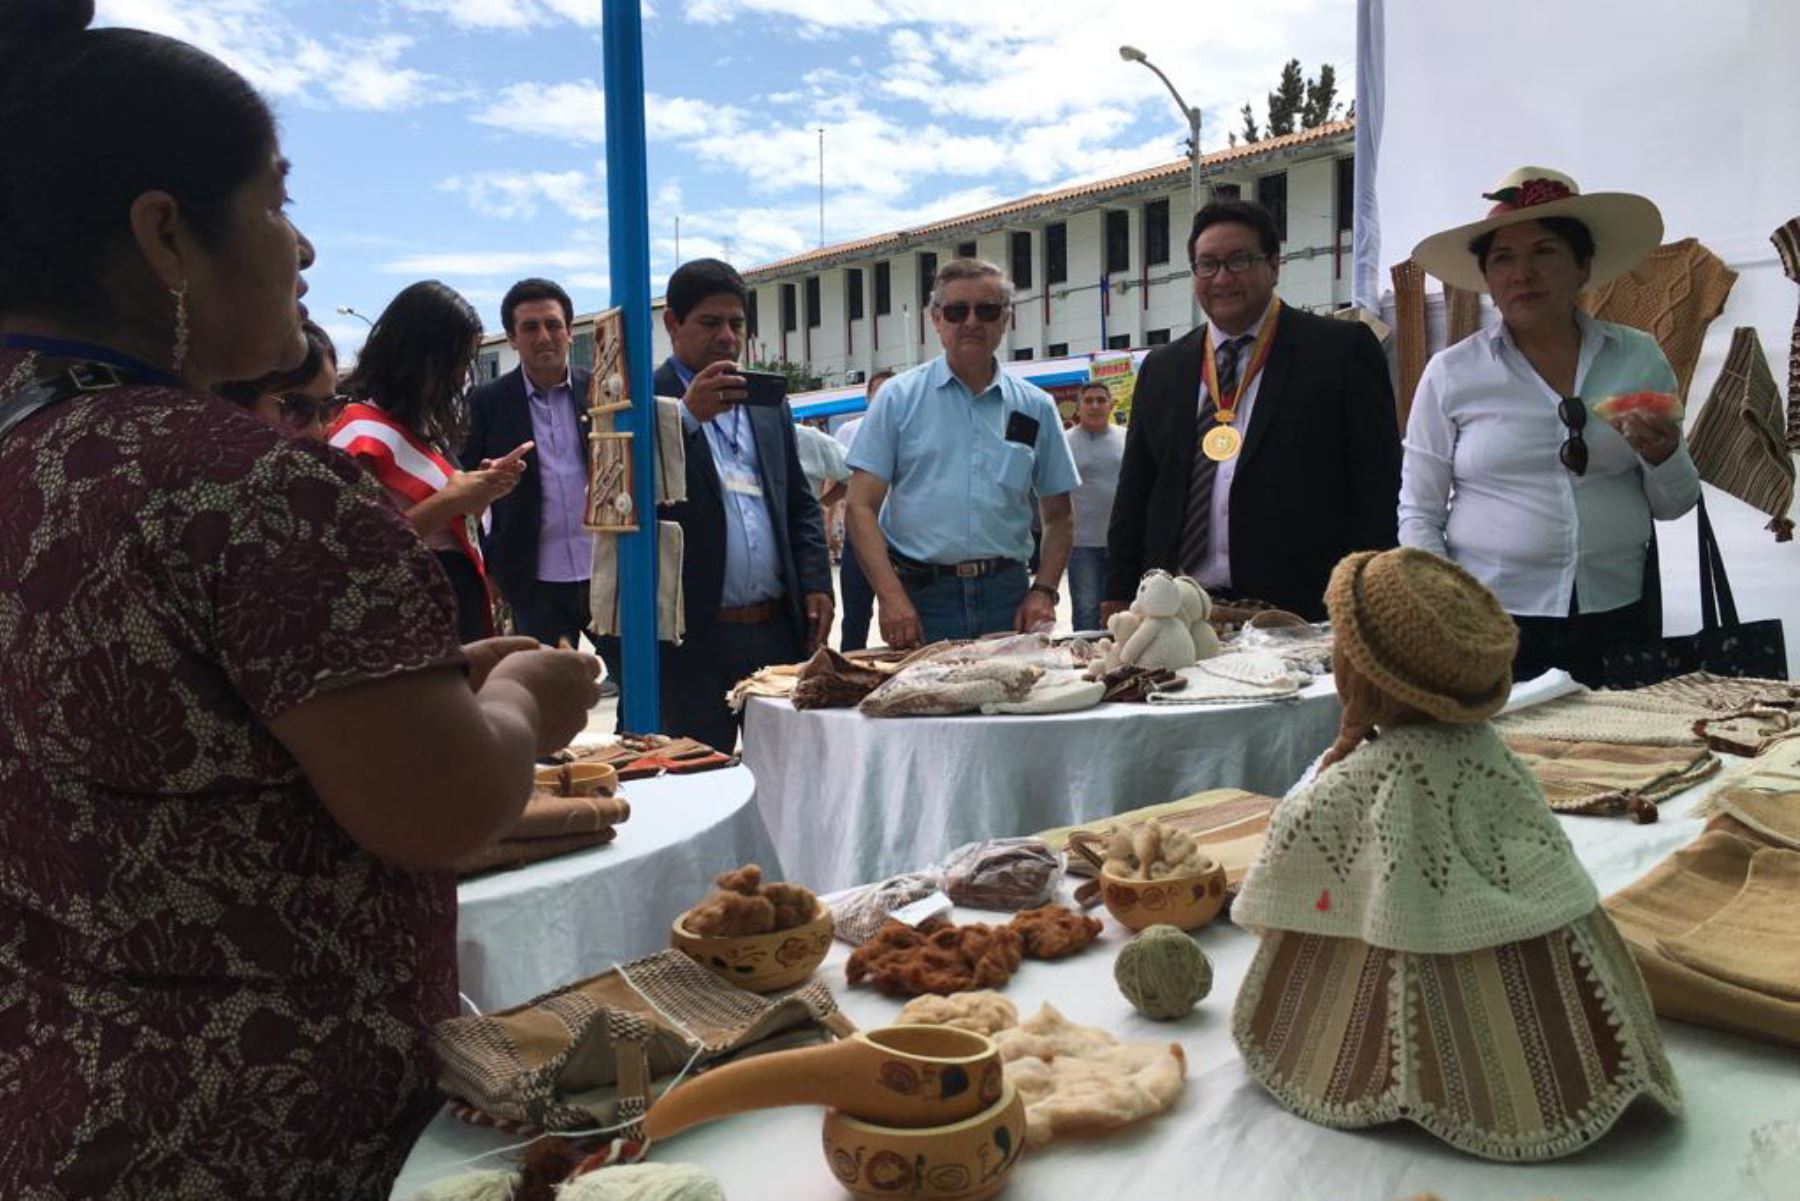 Algodón nativo es uno de los atractivos de la XII Feria Birregional de Integración Cultural y Económica Cajamarca-Lambayeque.